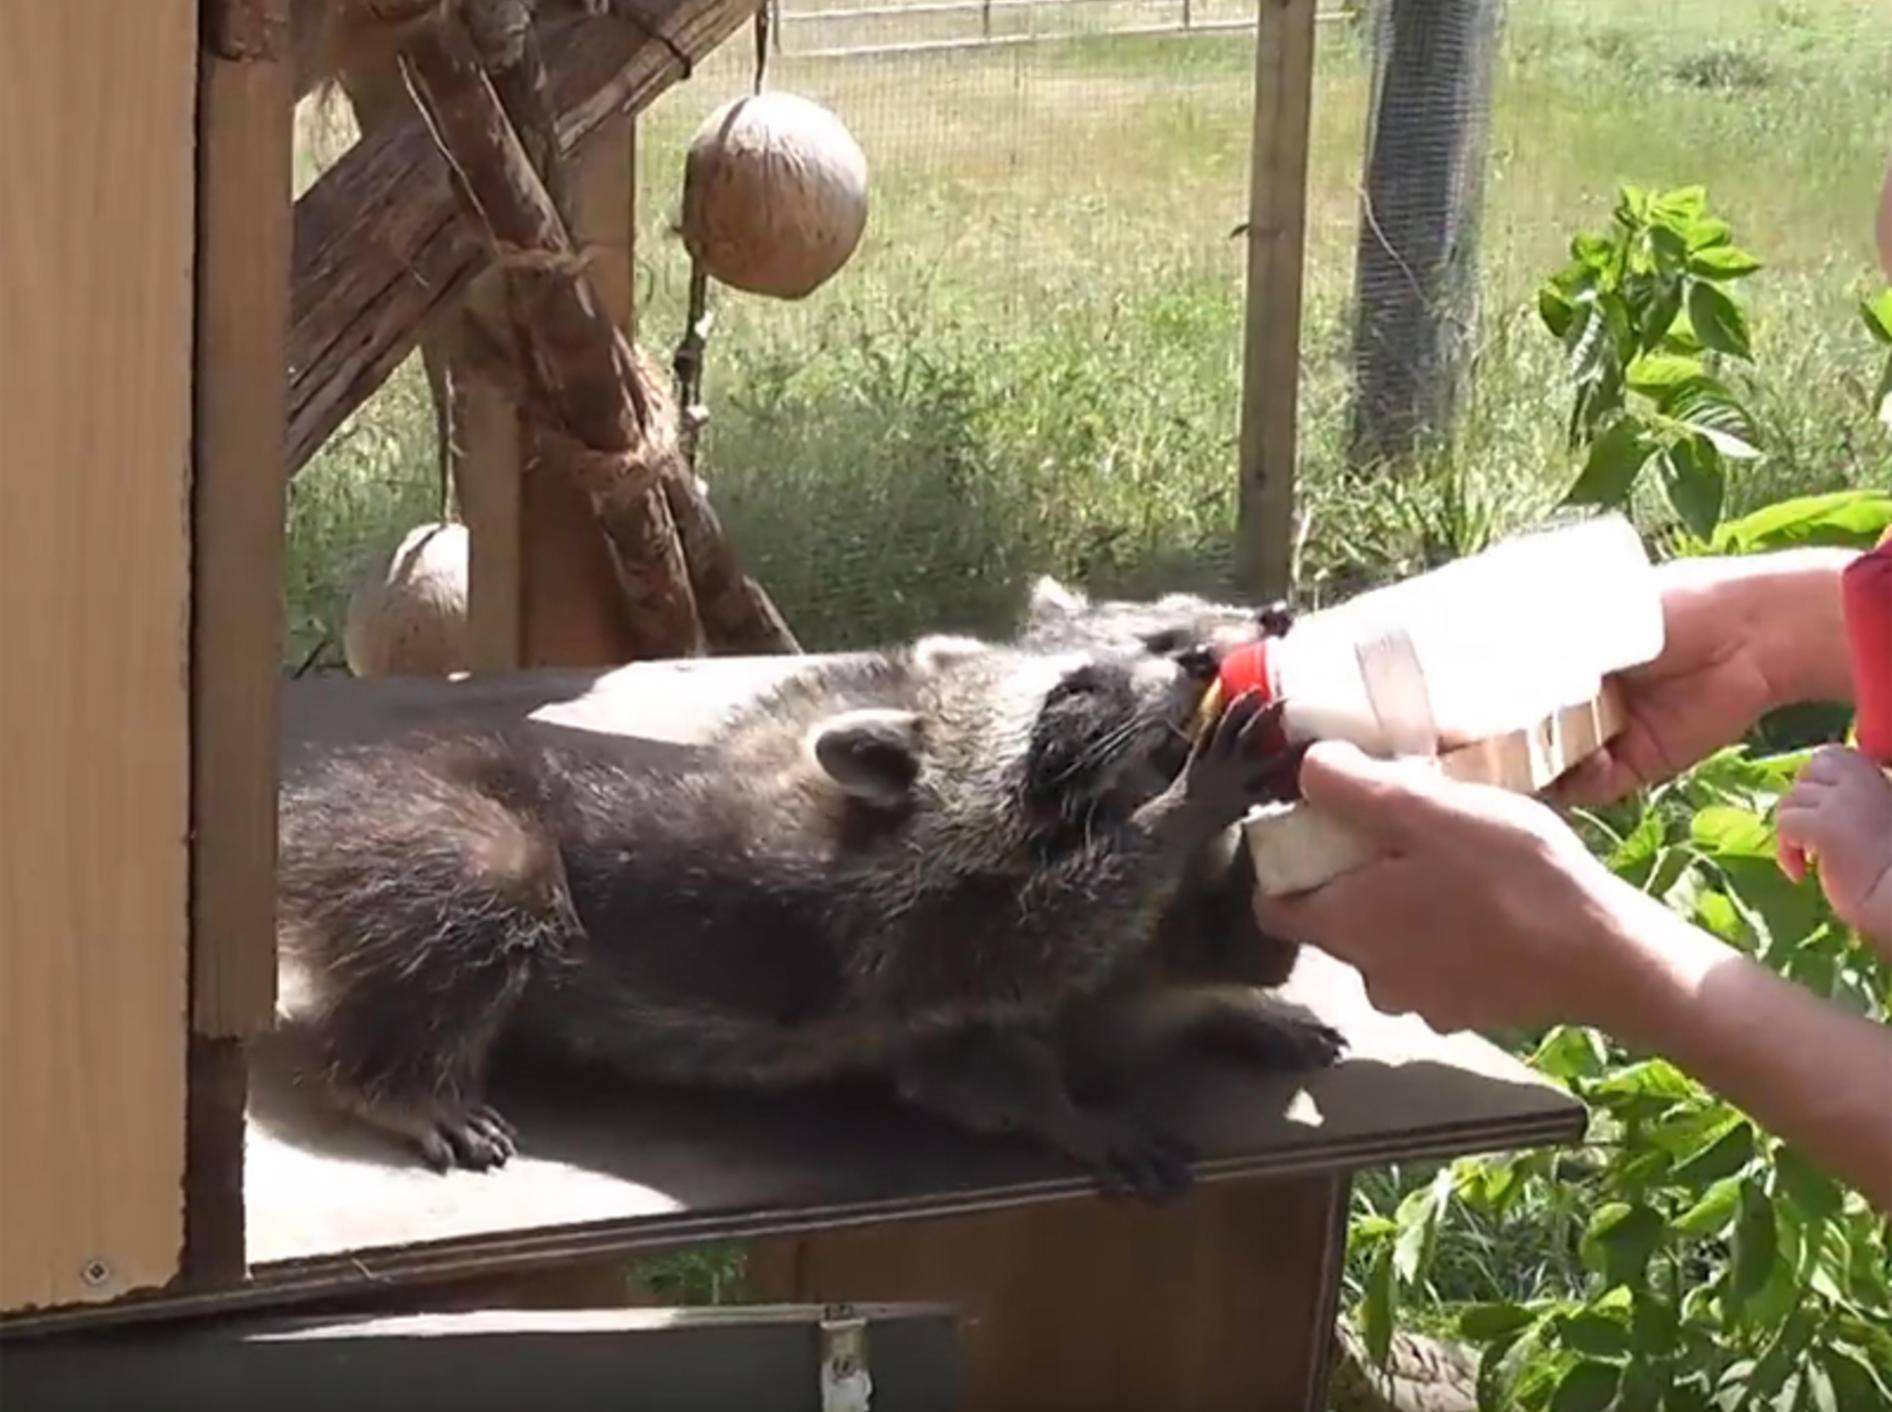 Quirlige Waisenwaschbärenbande wird liebevoll aufgepäppelt – YouTube / mbhsug